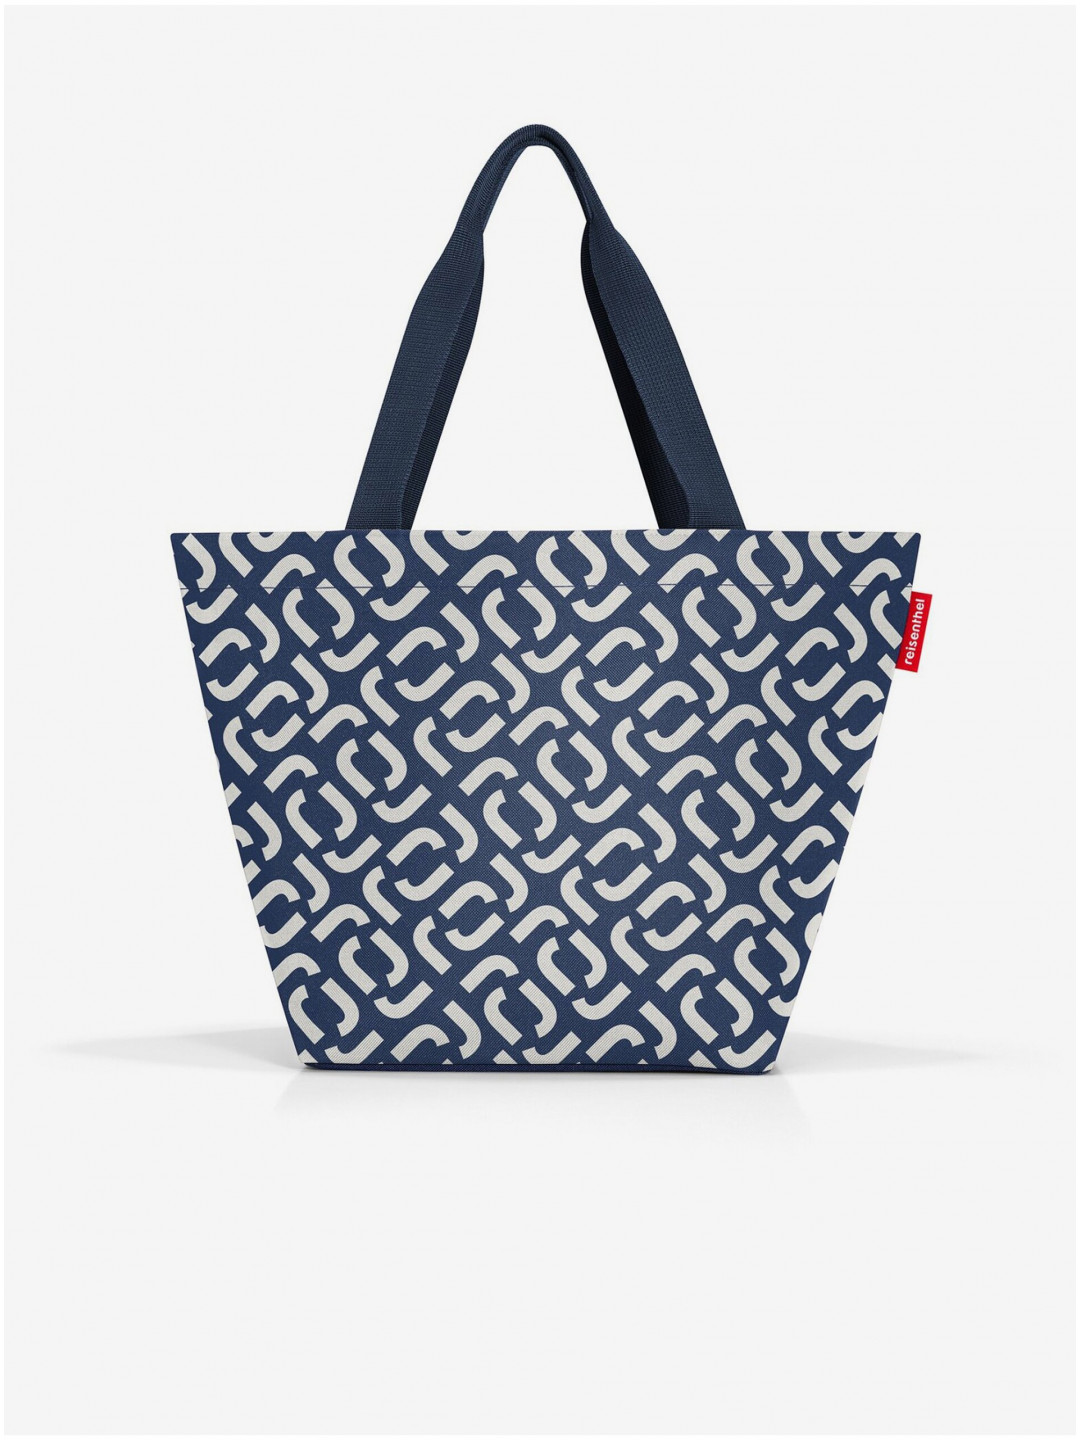 Tmavě modrá dámská vzorovaná kabelka Reisenthel Shopper M